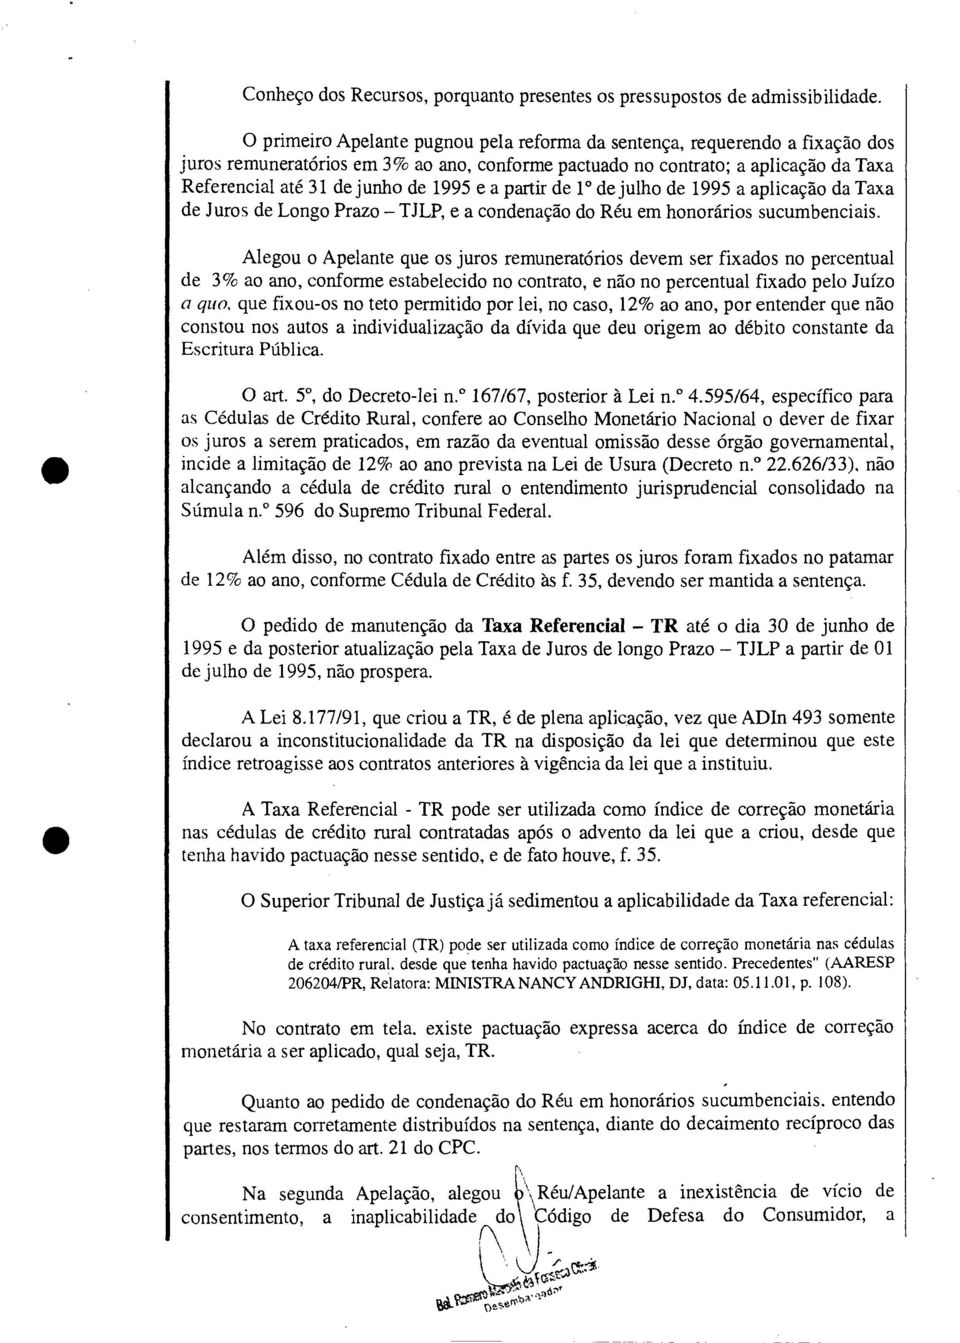 e a partir de 10 de julho de 1995 a aplicação da Taxa de Juros de Longo Prazo TJLP, e a condenação do Réu em honorários sucumbenciais.